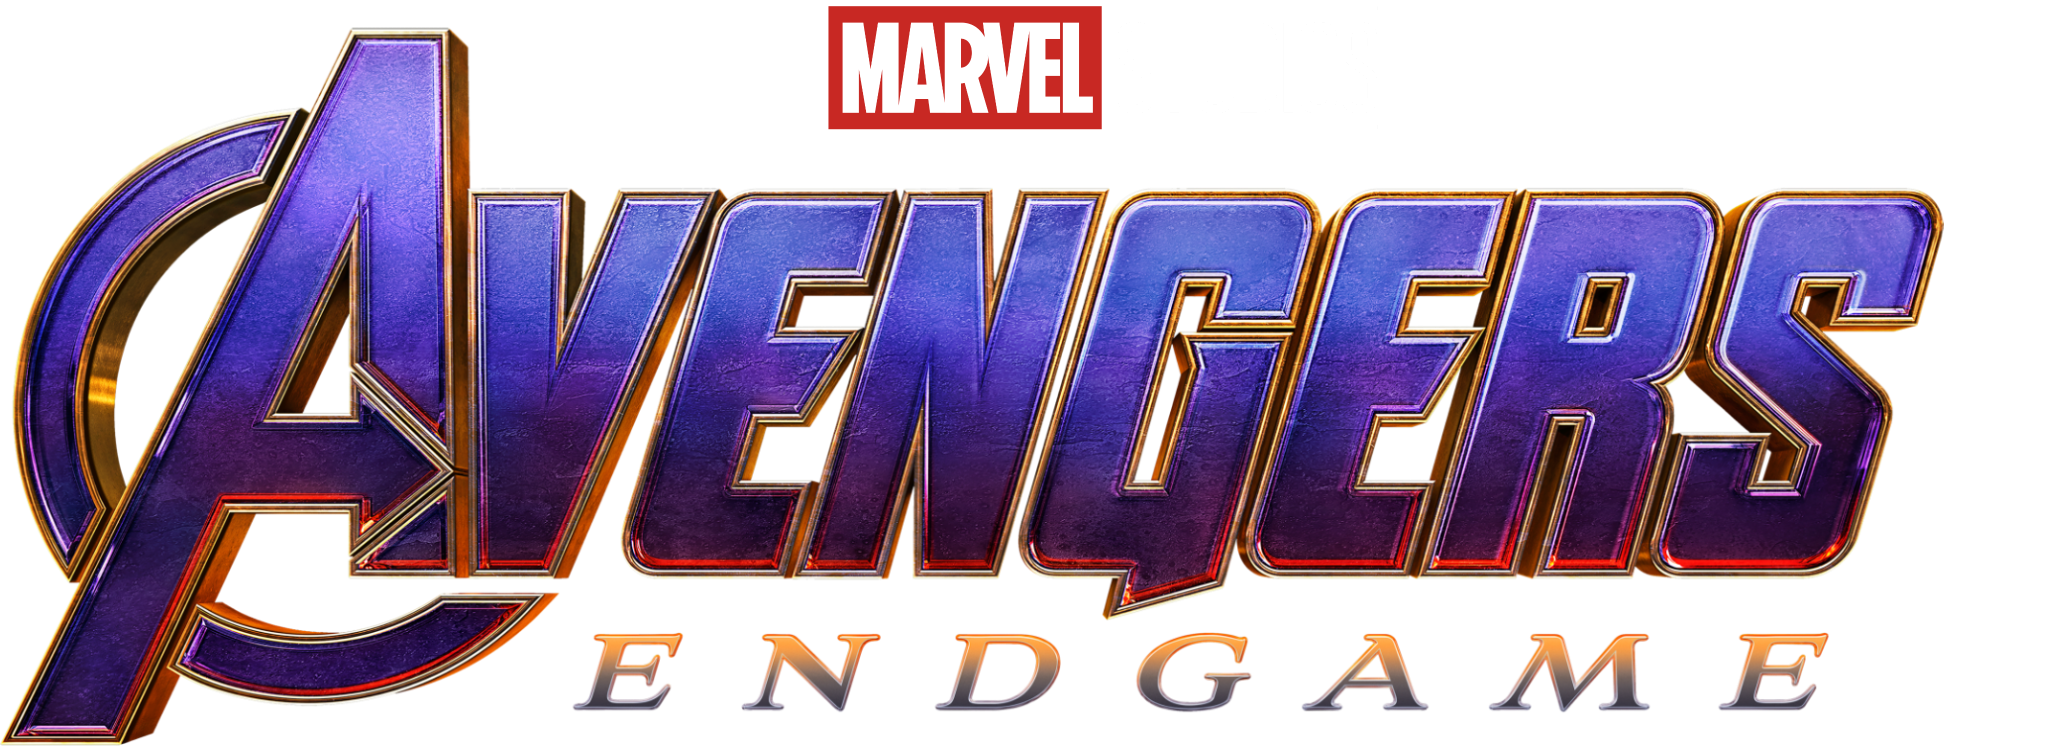 Avengers: Endgame Movie Title